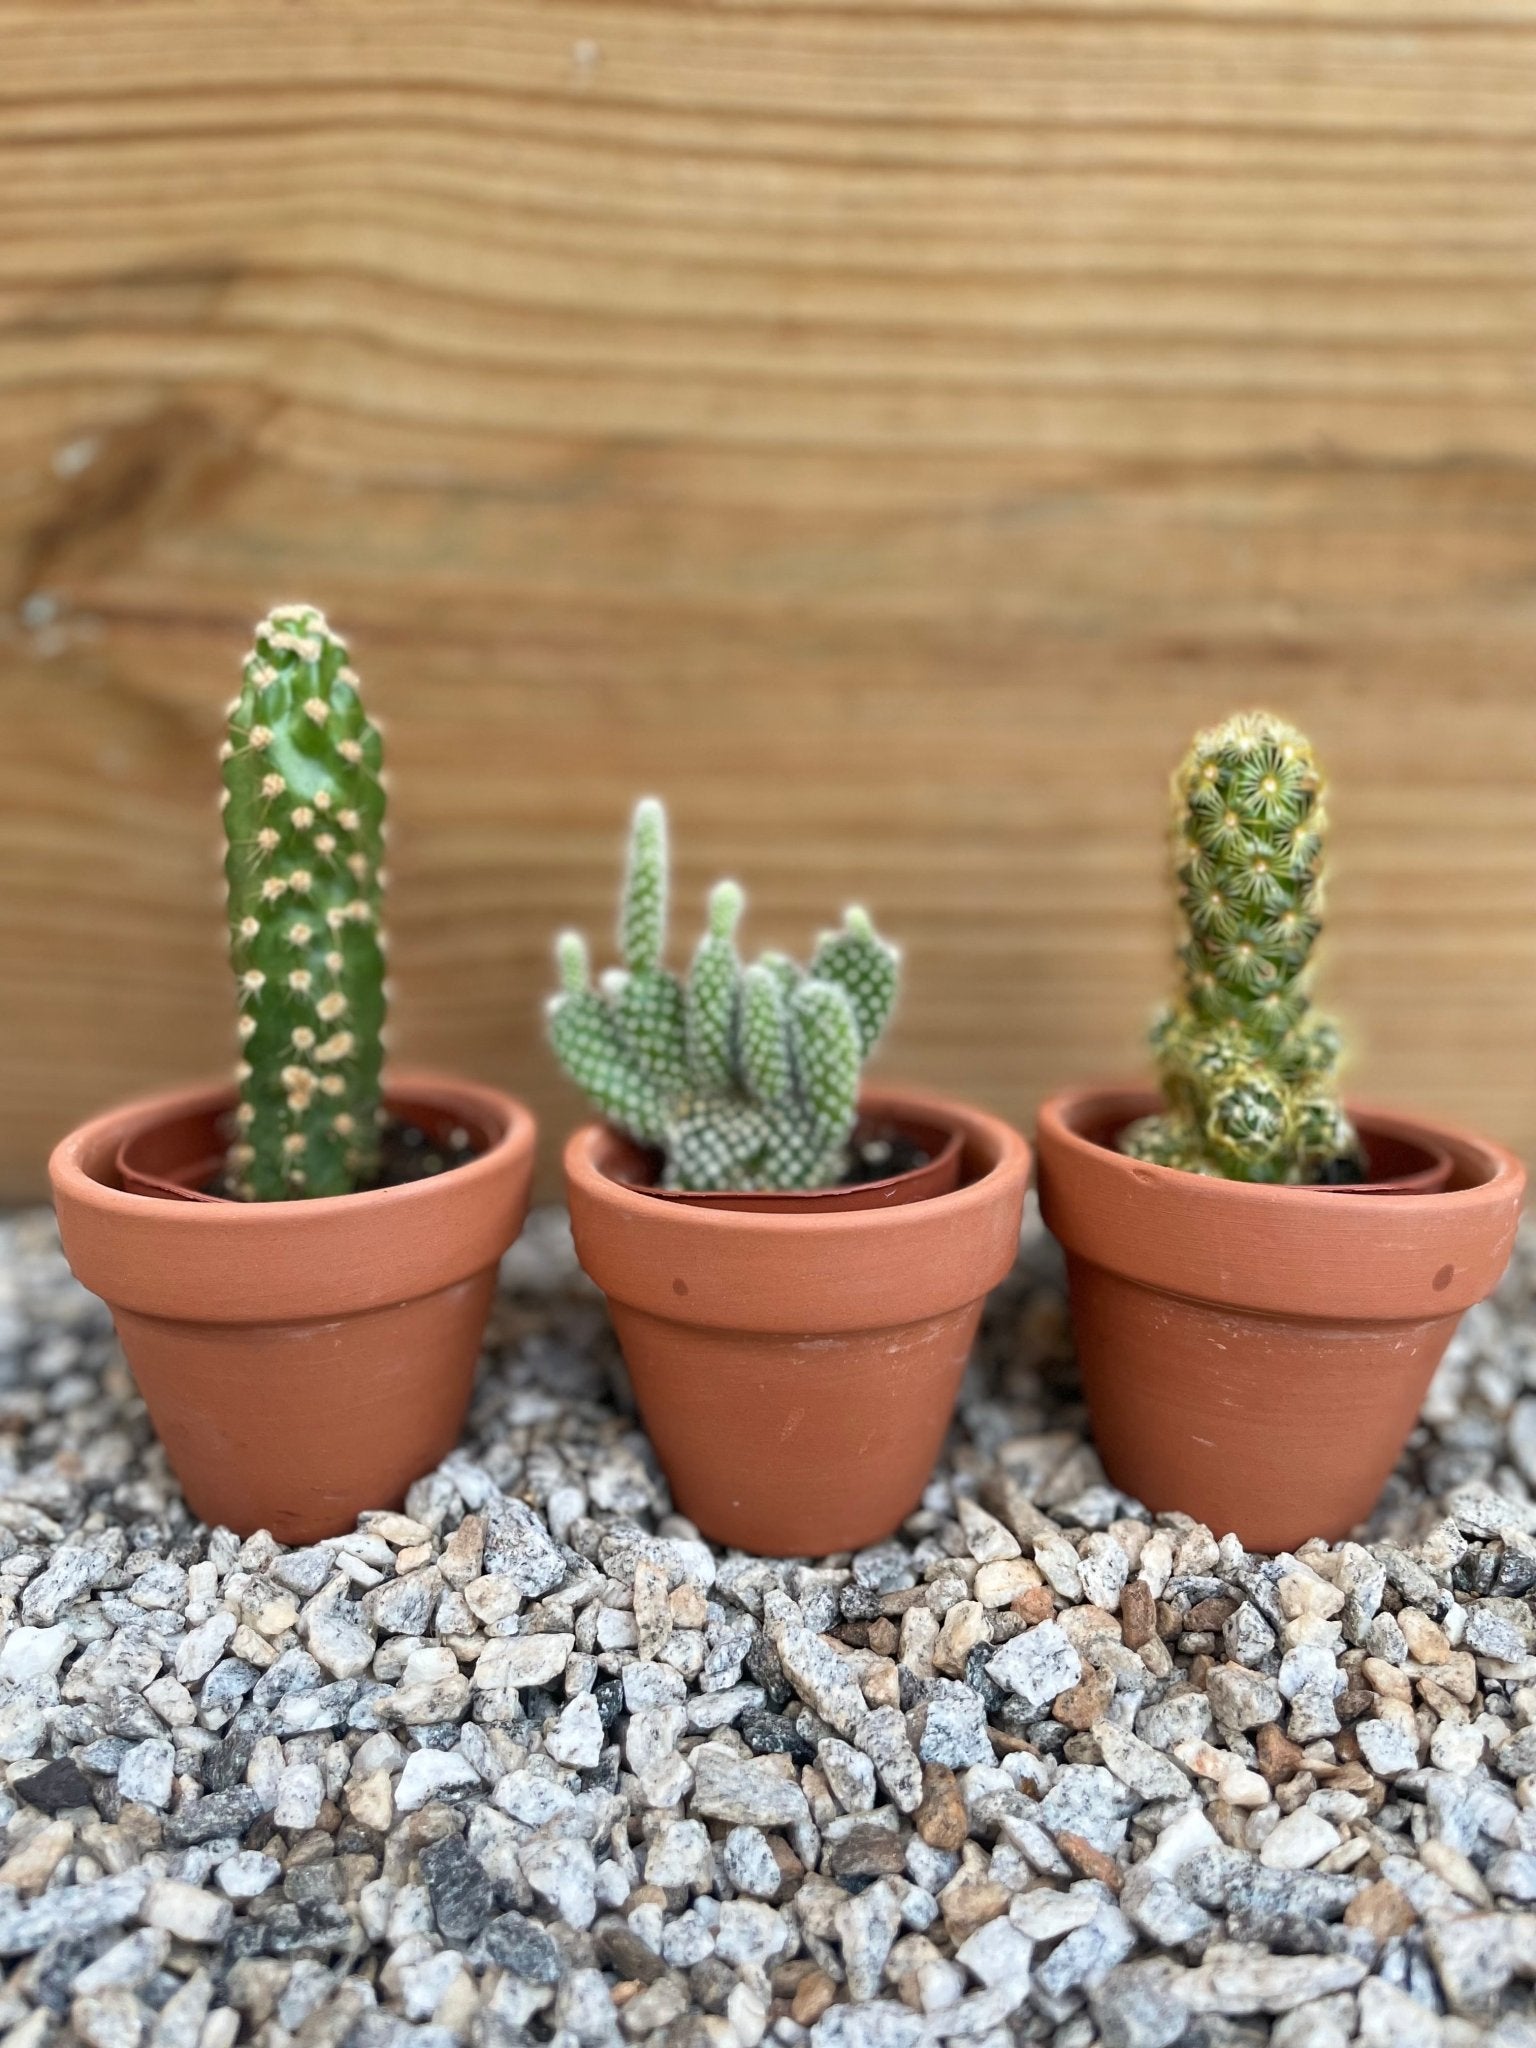 Mini Cactus Box